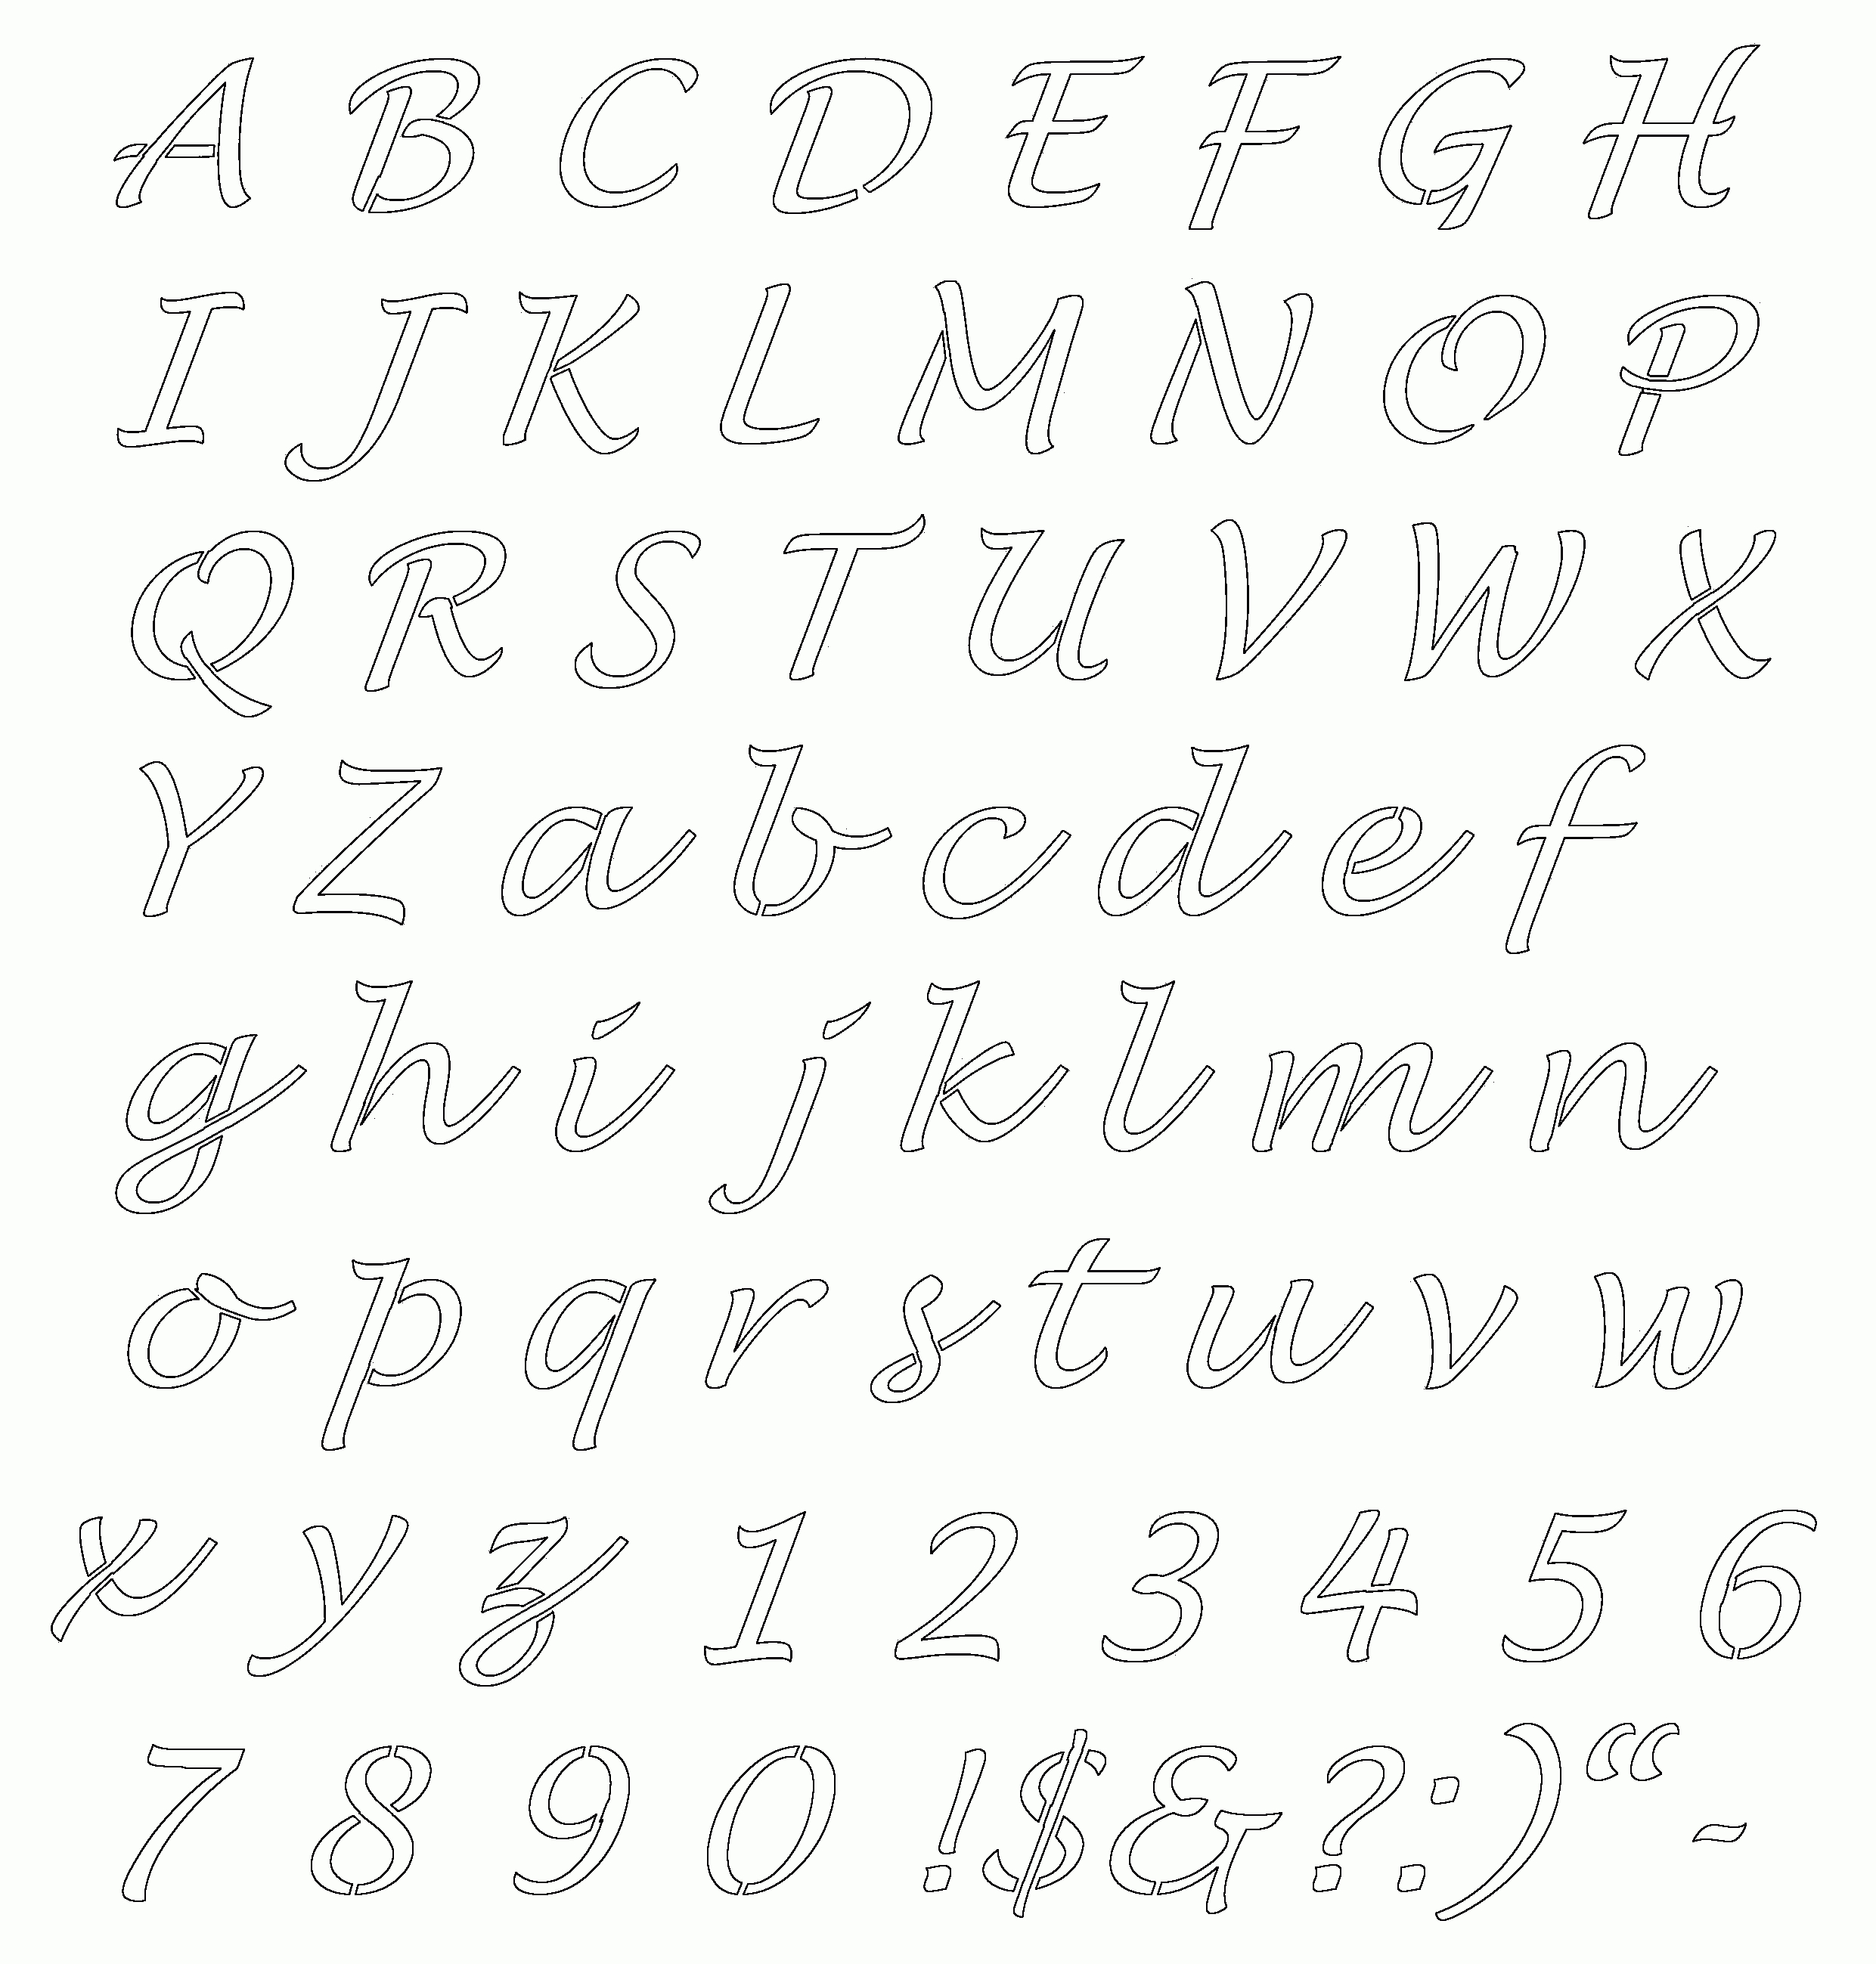 Free Online Alphabet Templates | Stencils Free Printable Alphabetaug - Free Printable Old English Letters